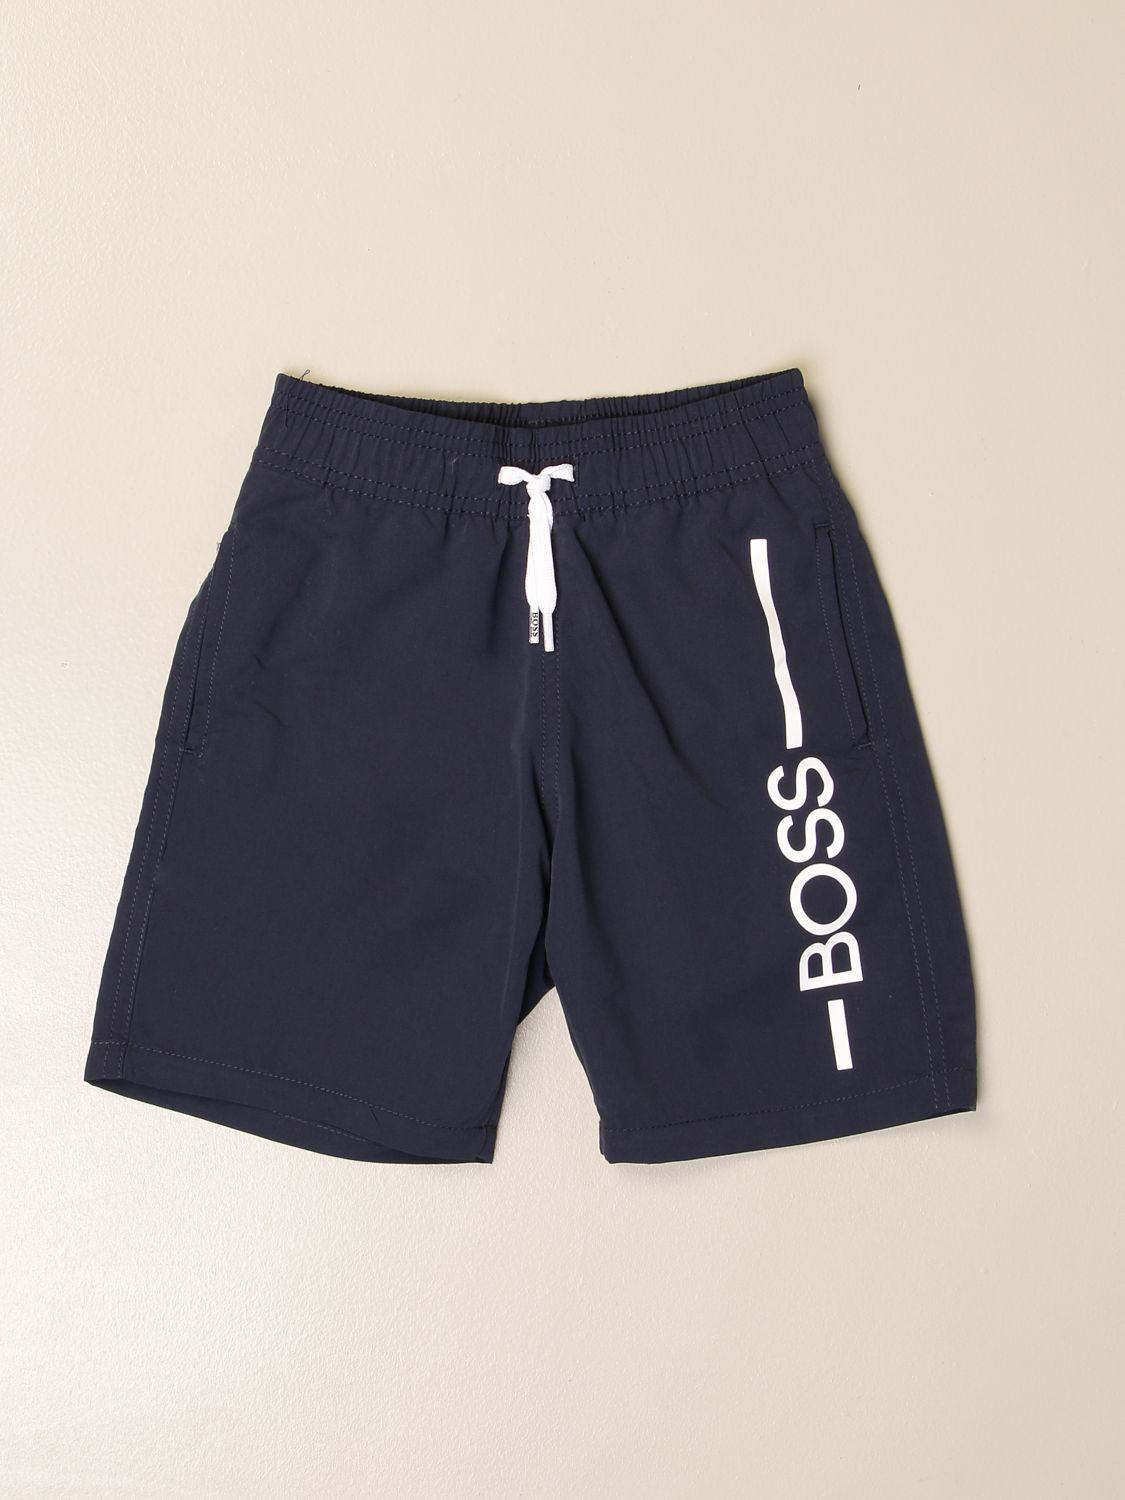 Shorts Hugo Boss: Swimsuit kids Hugo Boss blue 1